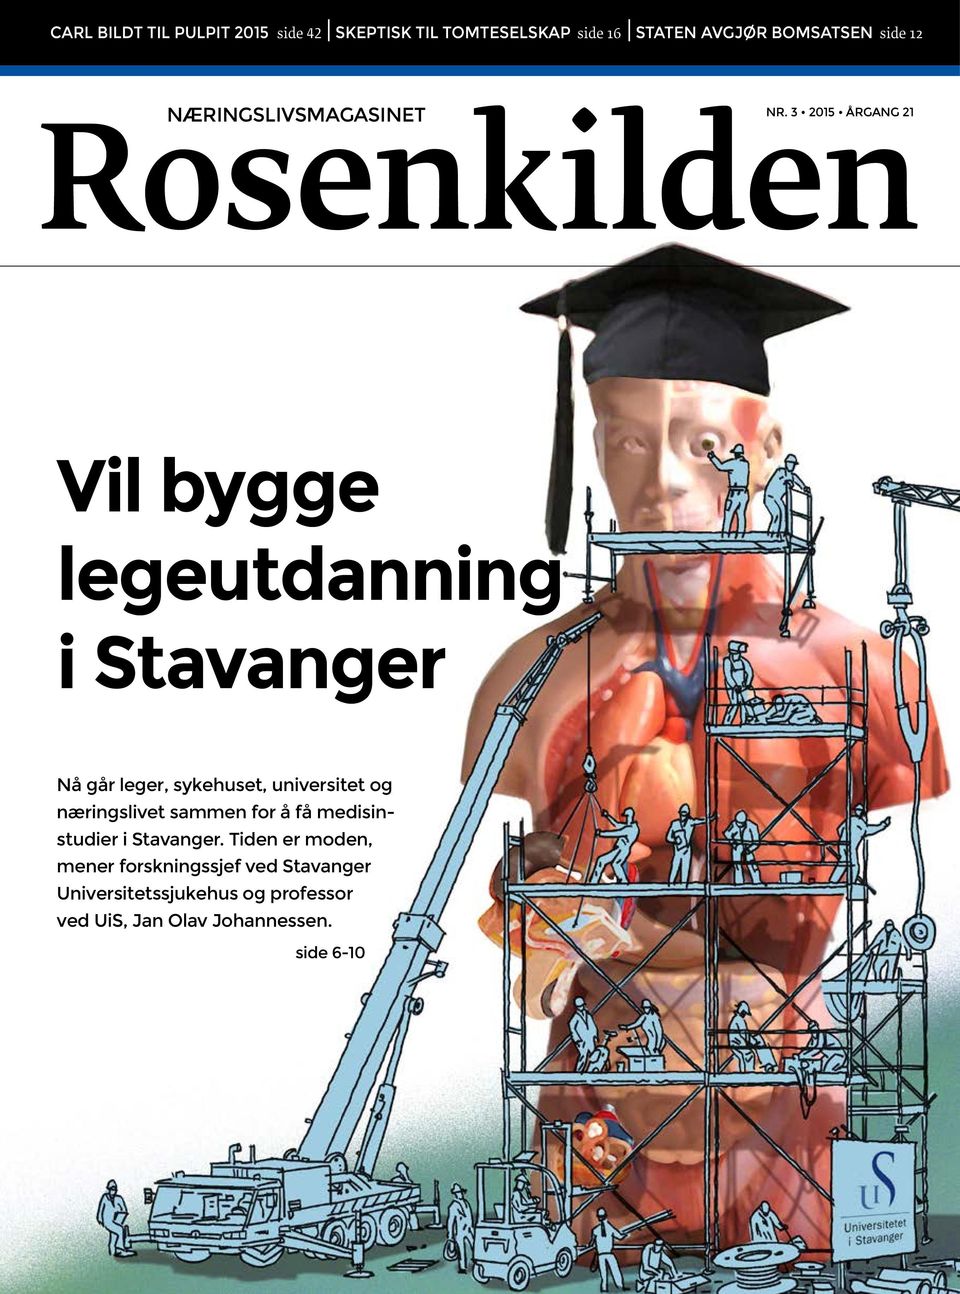 3 2015 ÅRGANG 21 Rosenkilden Vil bygge legeutdanning i Stavanger Nå går leger, sykehuset, universitet